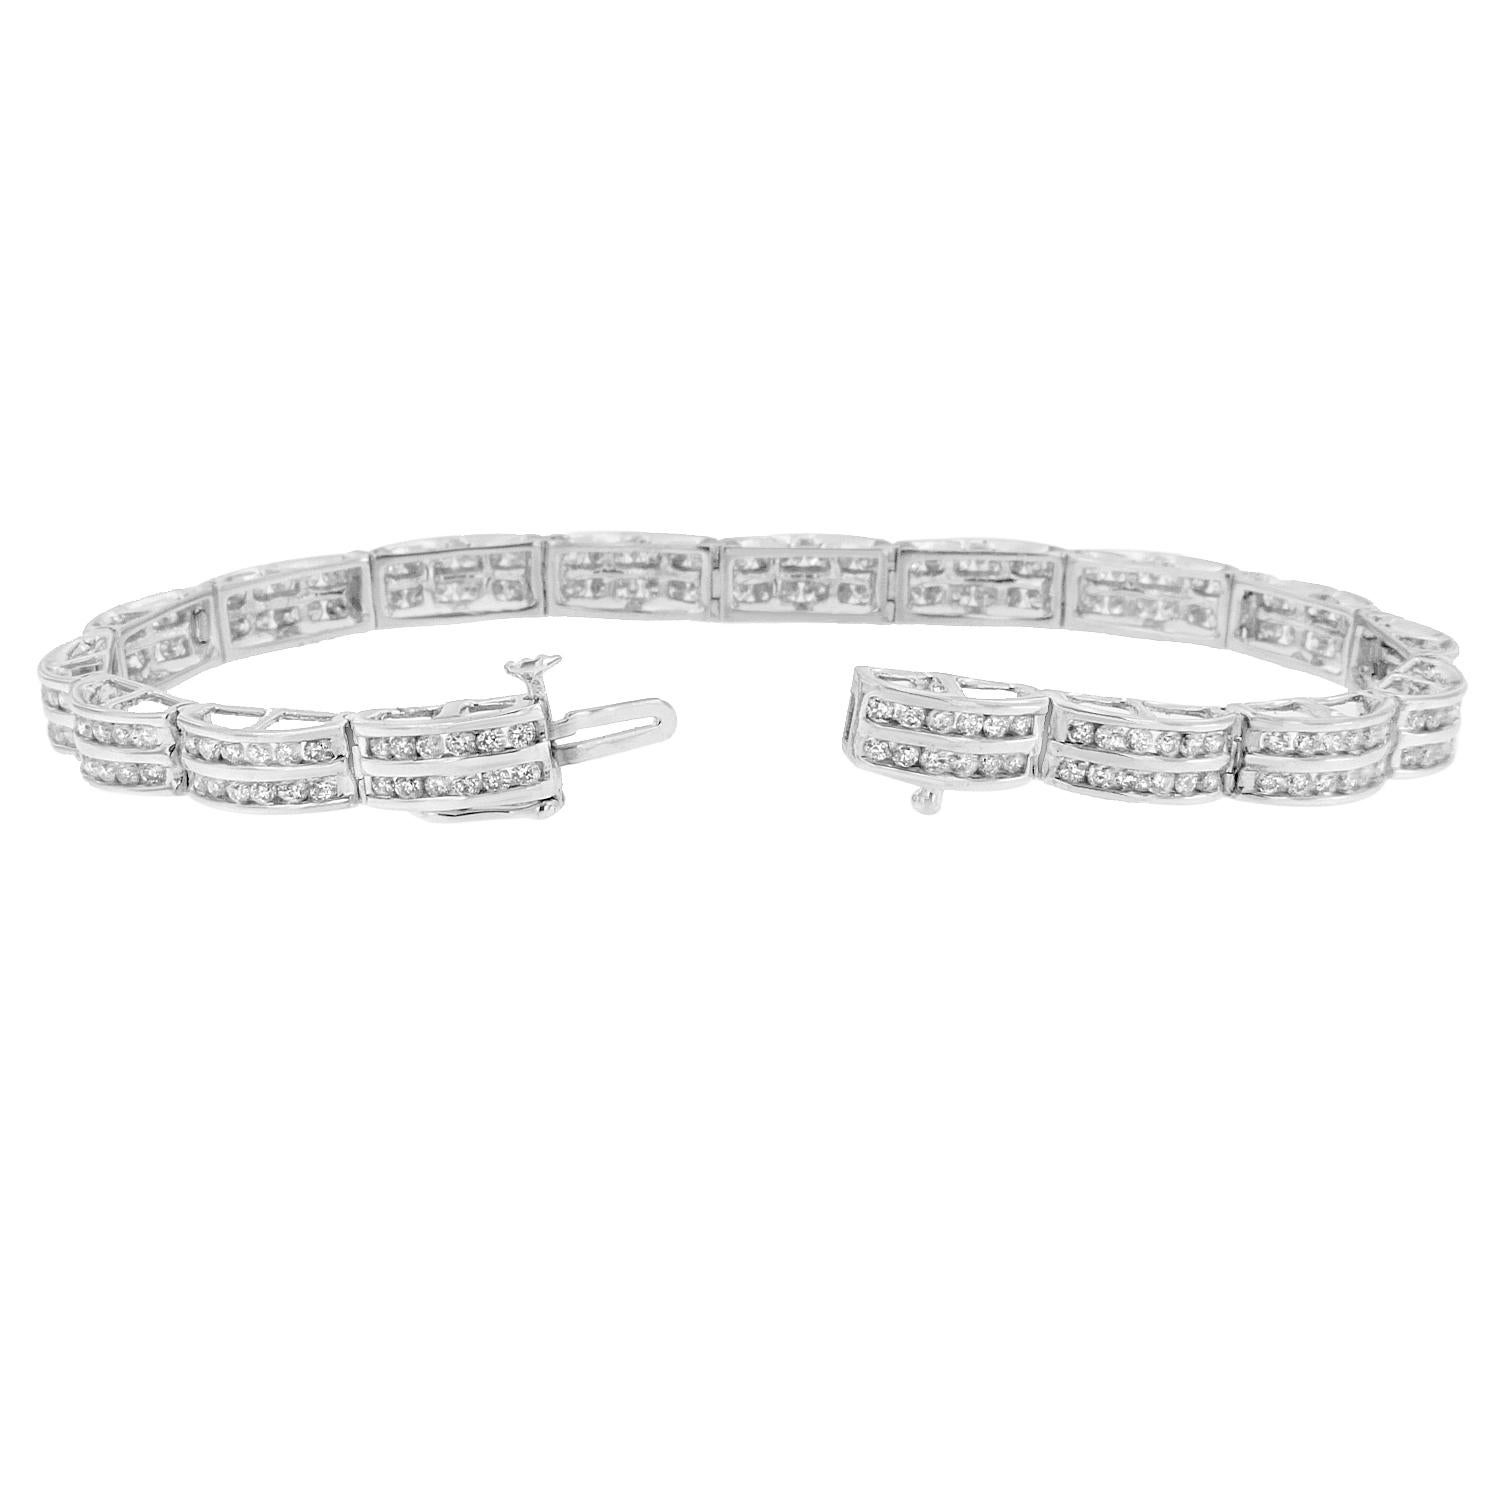 Ce bracelet tennis en diamants, qui brille de mille feux, est élégant pour un look quotidien. Créé avec de l'or blanc 14 carats, ce superbe bracelet ajoute une subtile brillance. Avec son design en forme de chaîne, le sertissage unique de diamants